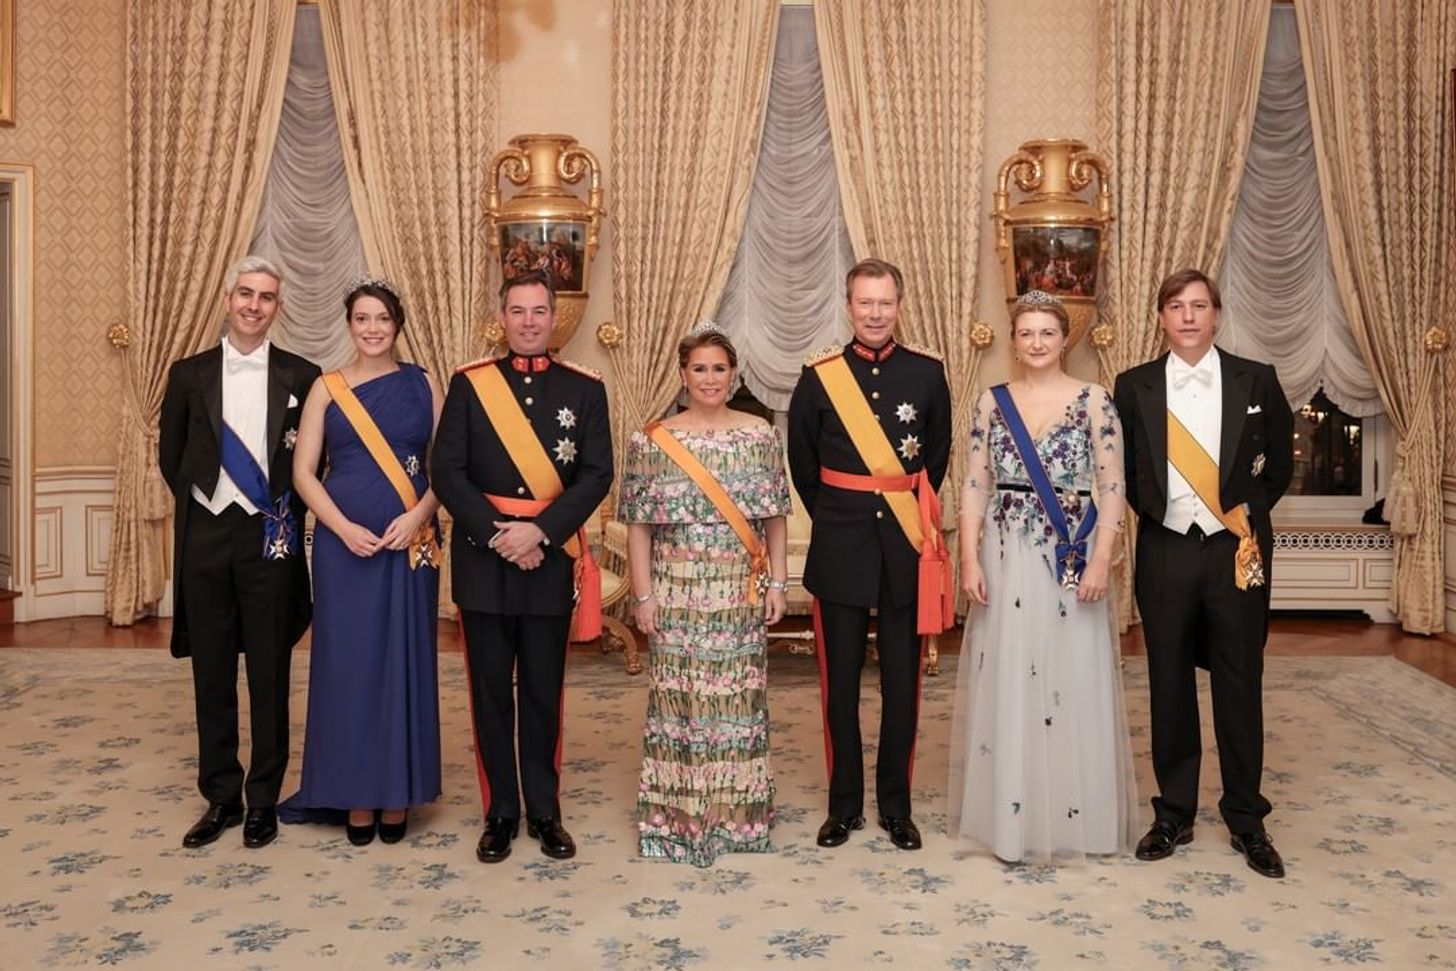 Pracht en praal: Luxemburgse royals houden nieuwjaarsreceptie in stijl